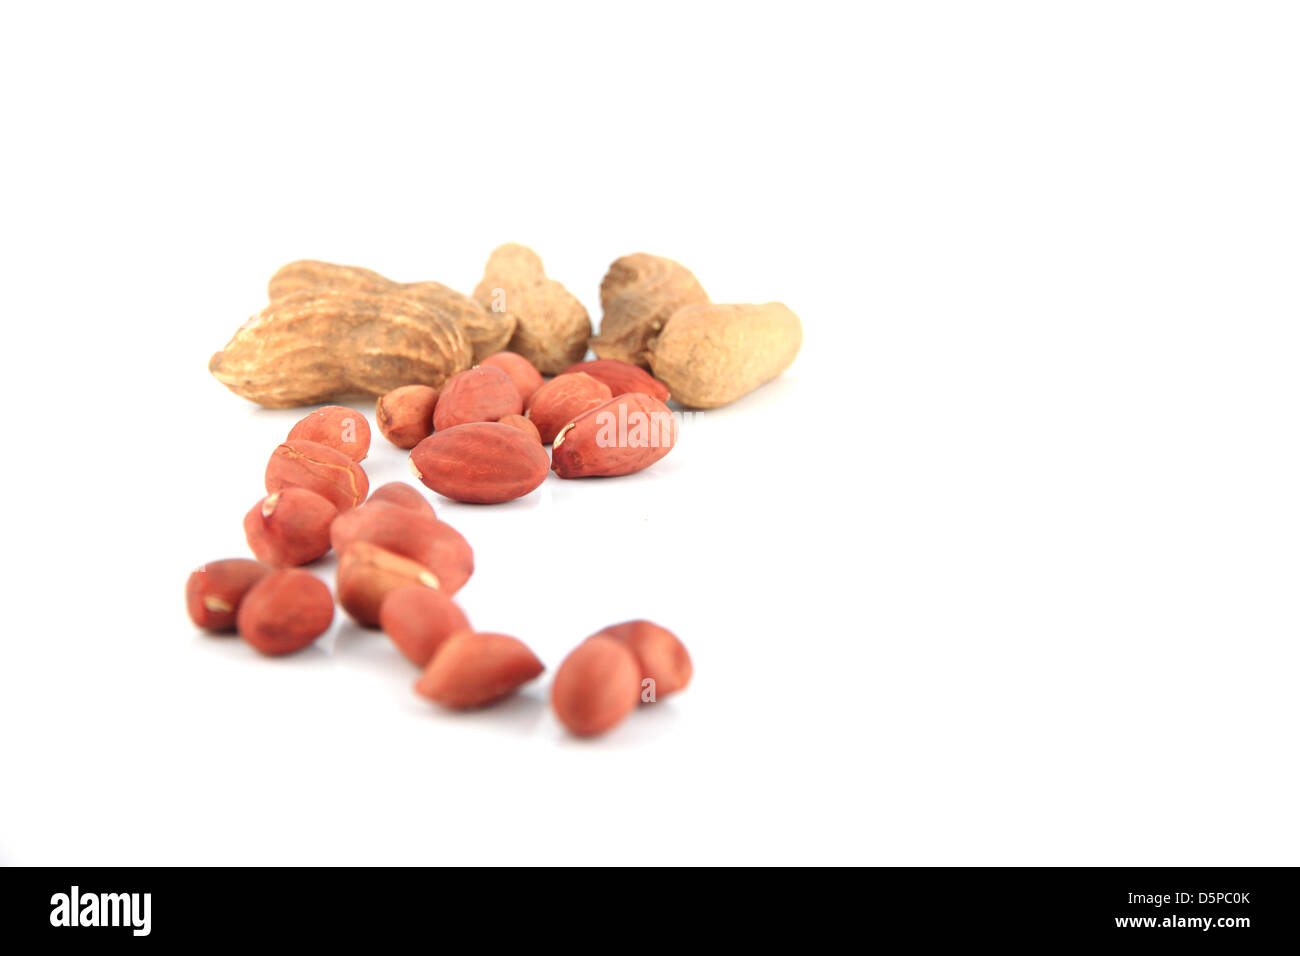 Un sacco di arachidi su isolate su sfondo bianco,la messa a fuoco su oggetti in primo piano Foto Stock